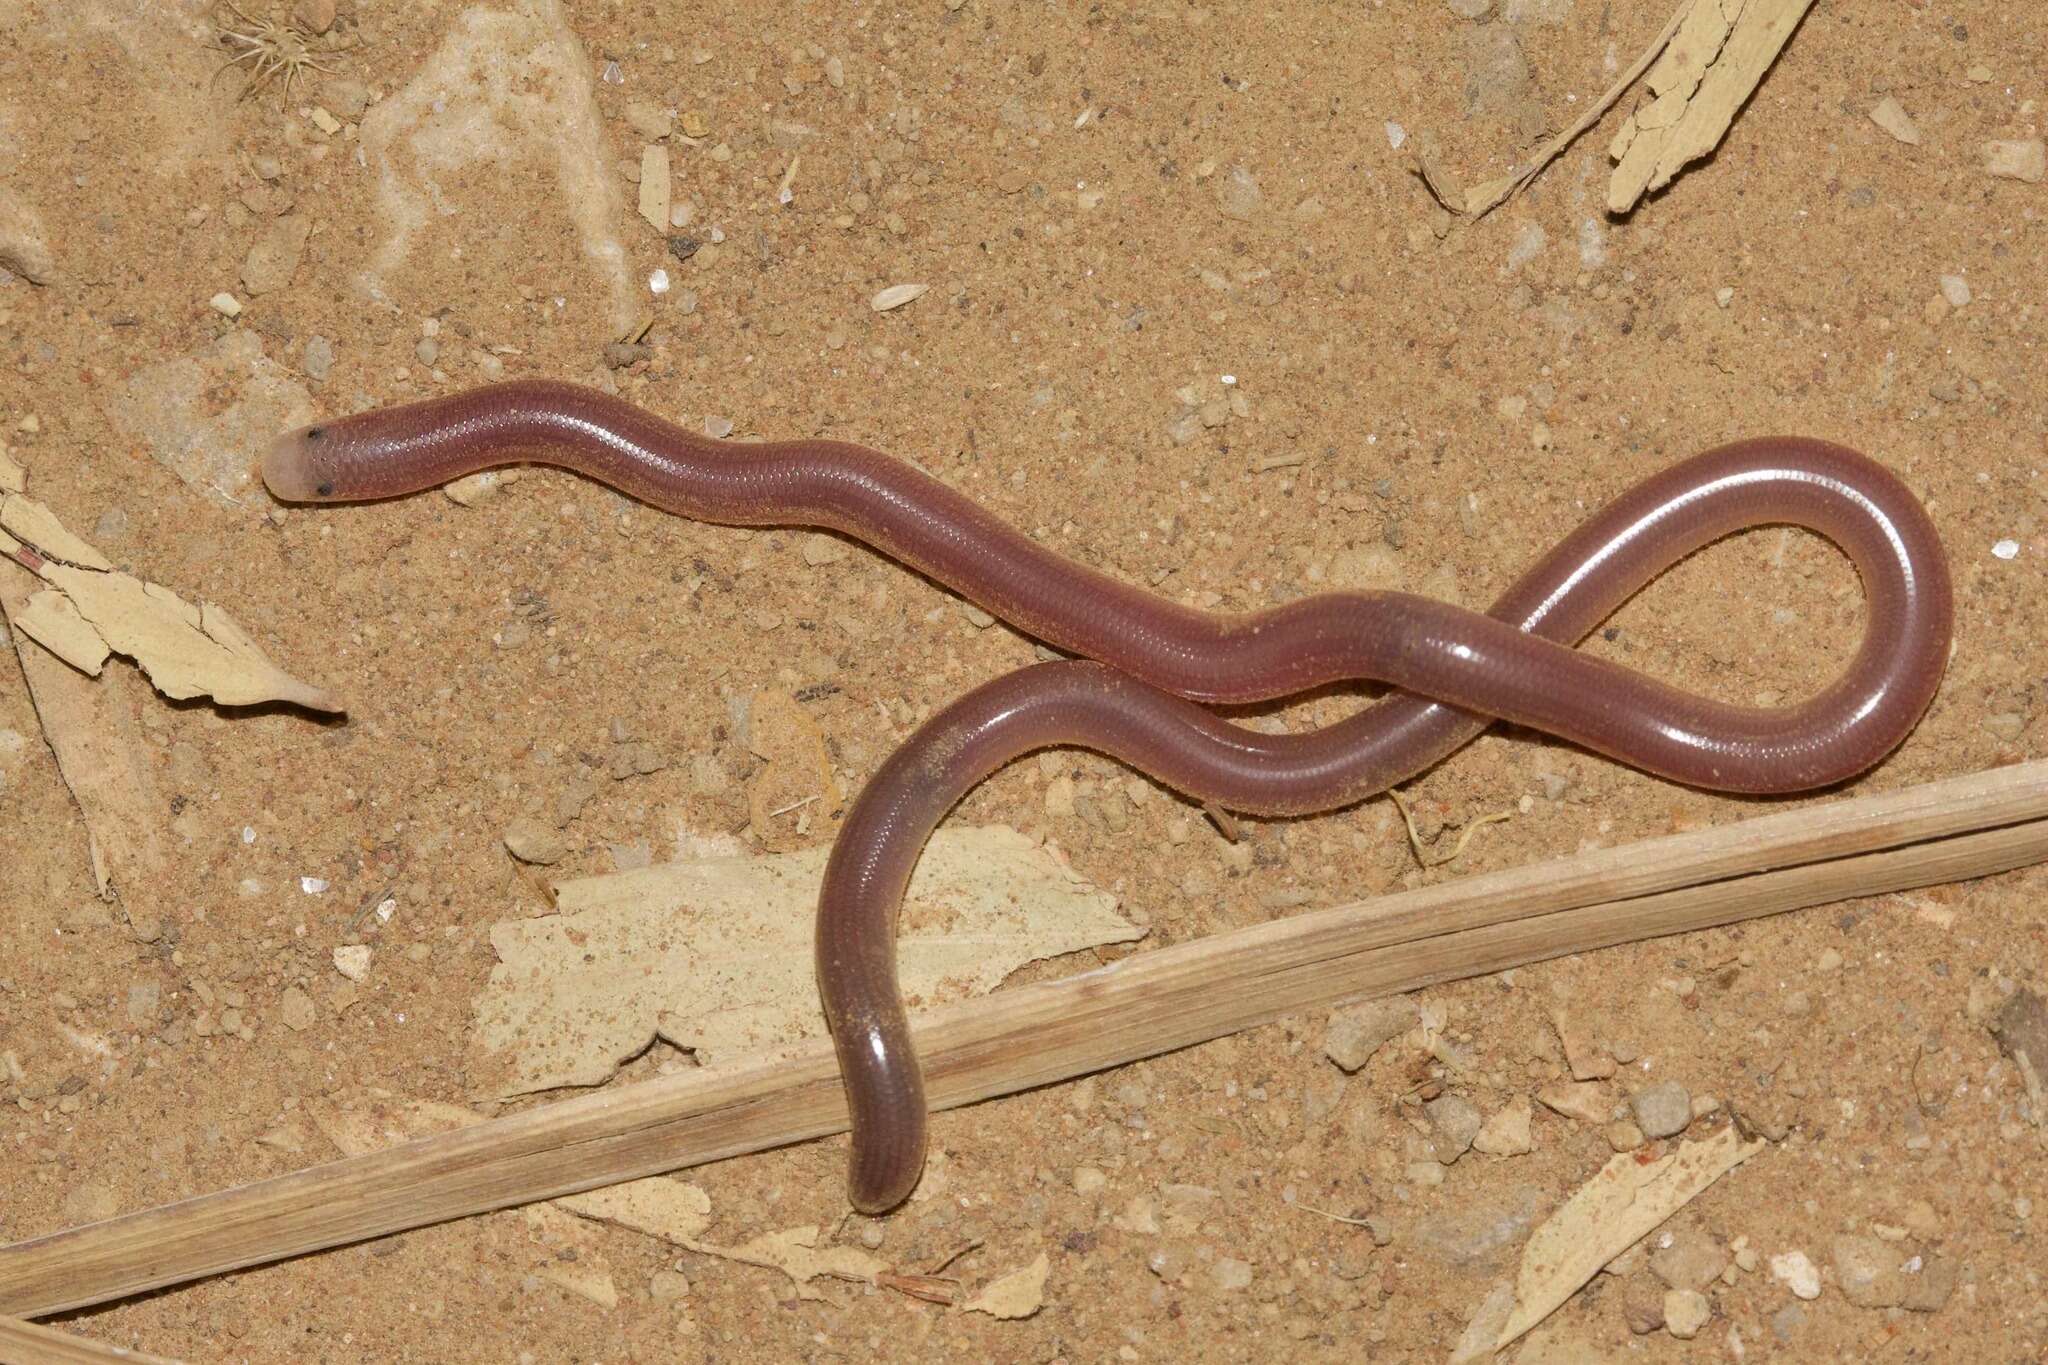 Image of Northern Blind Snake